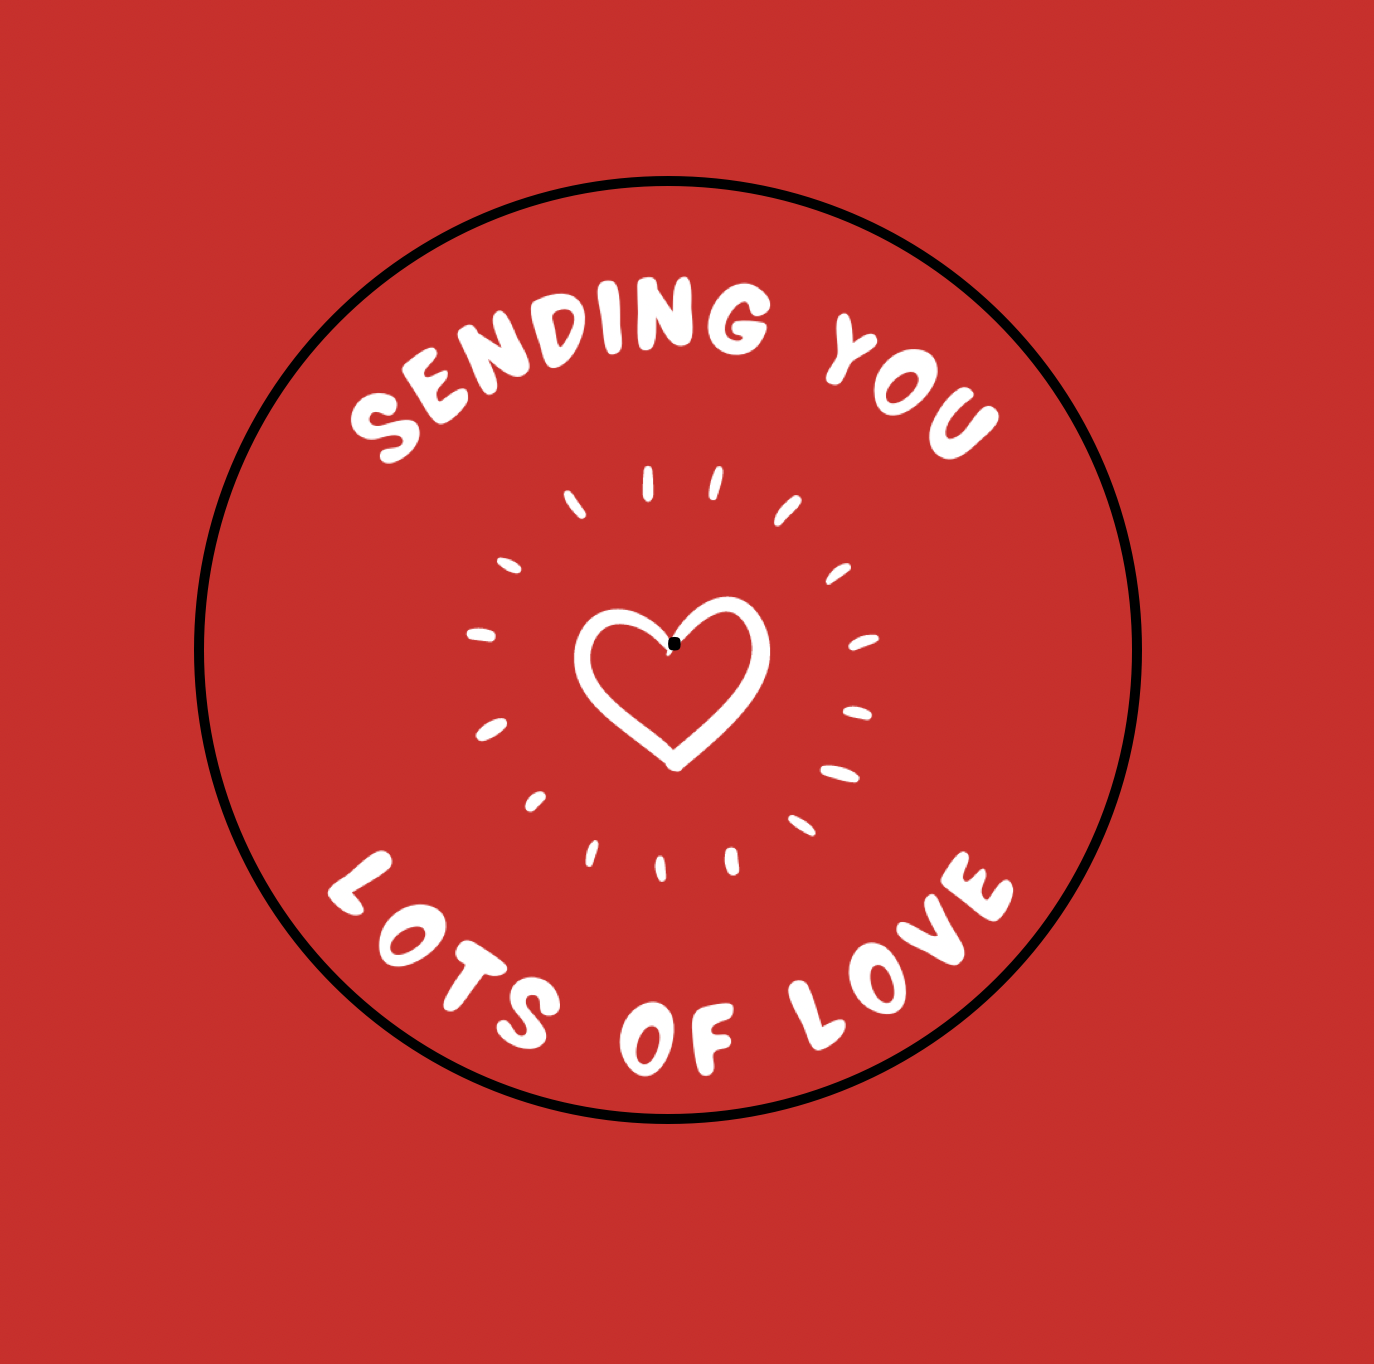 Vivir Sfeer - Een berichtje in een sfeerlichtje 'Sending you lots of love'